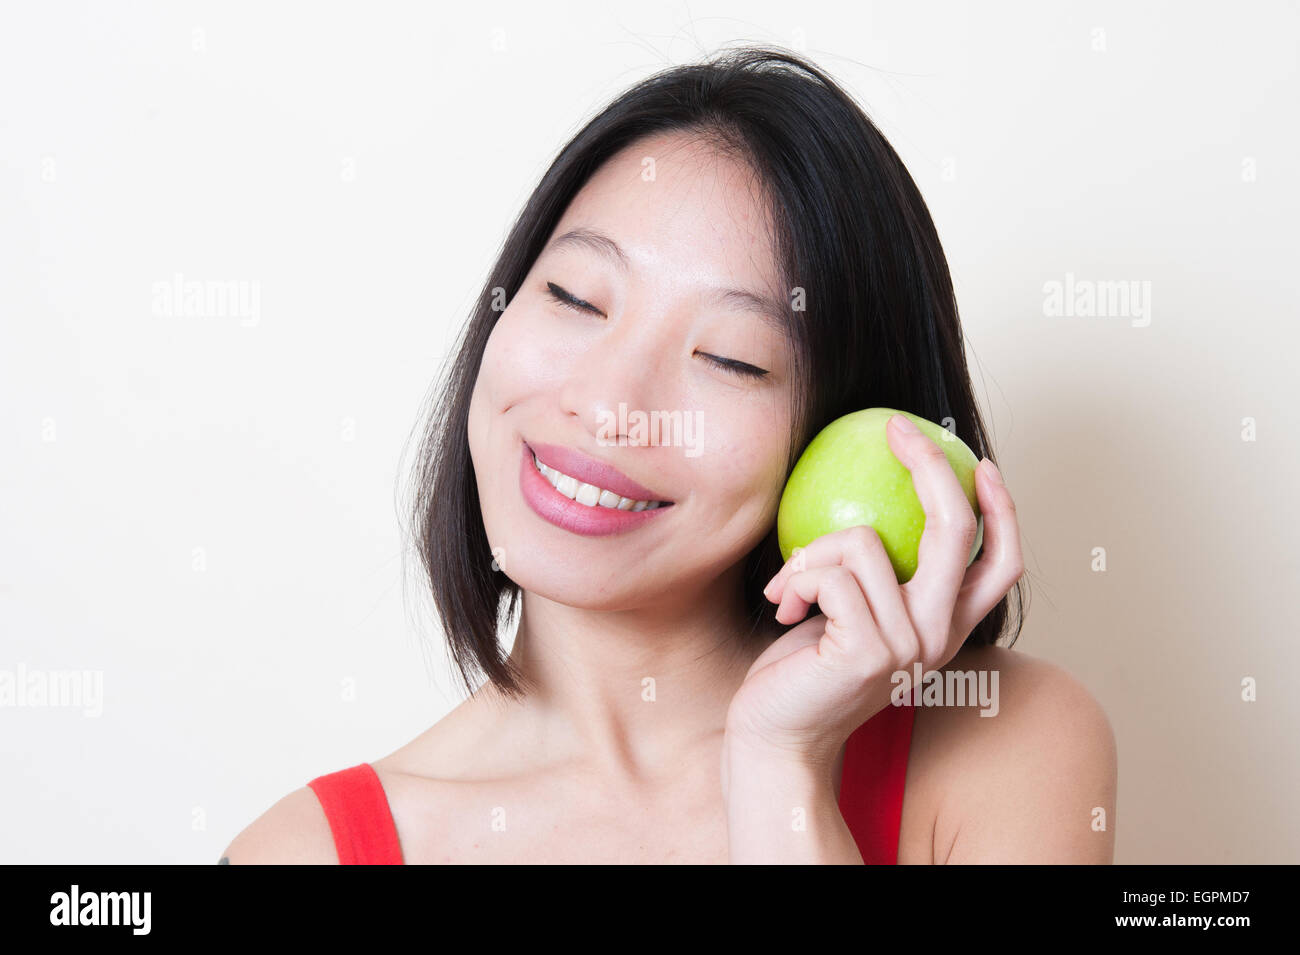 Junge schöne asiatische Frau im roten Kleid Closeup lächelnd mit enge Augen, grüner Apfel in die Hand in der Nähe von Gesicht auf weißem Hintergrund Stockfoto